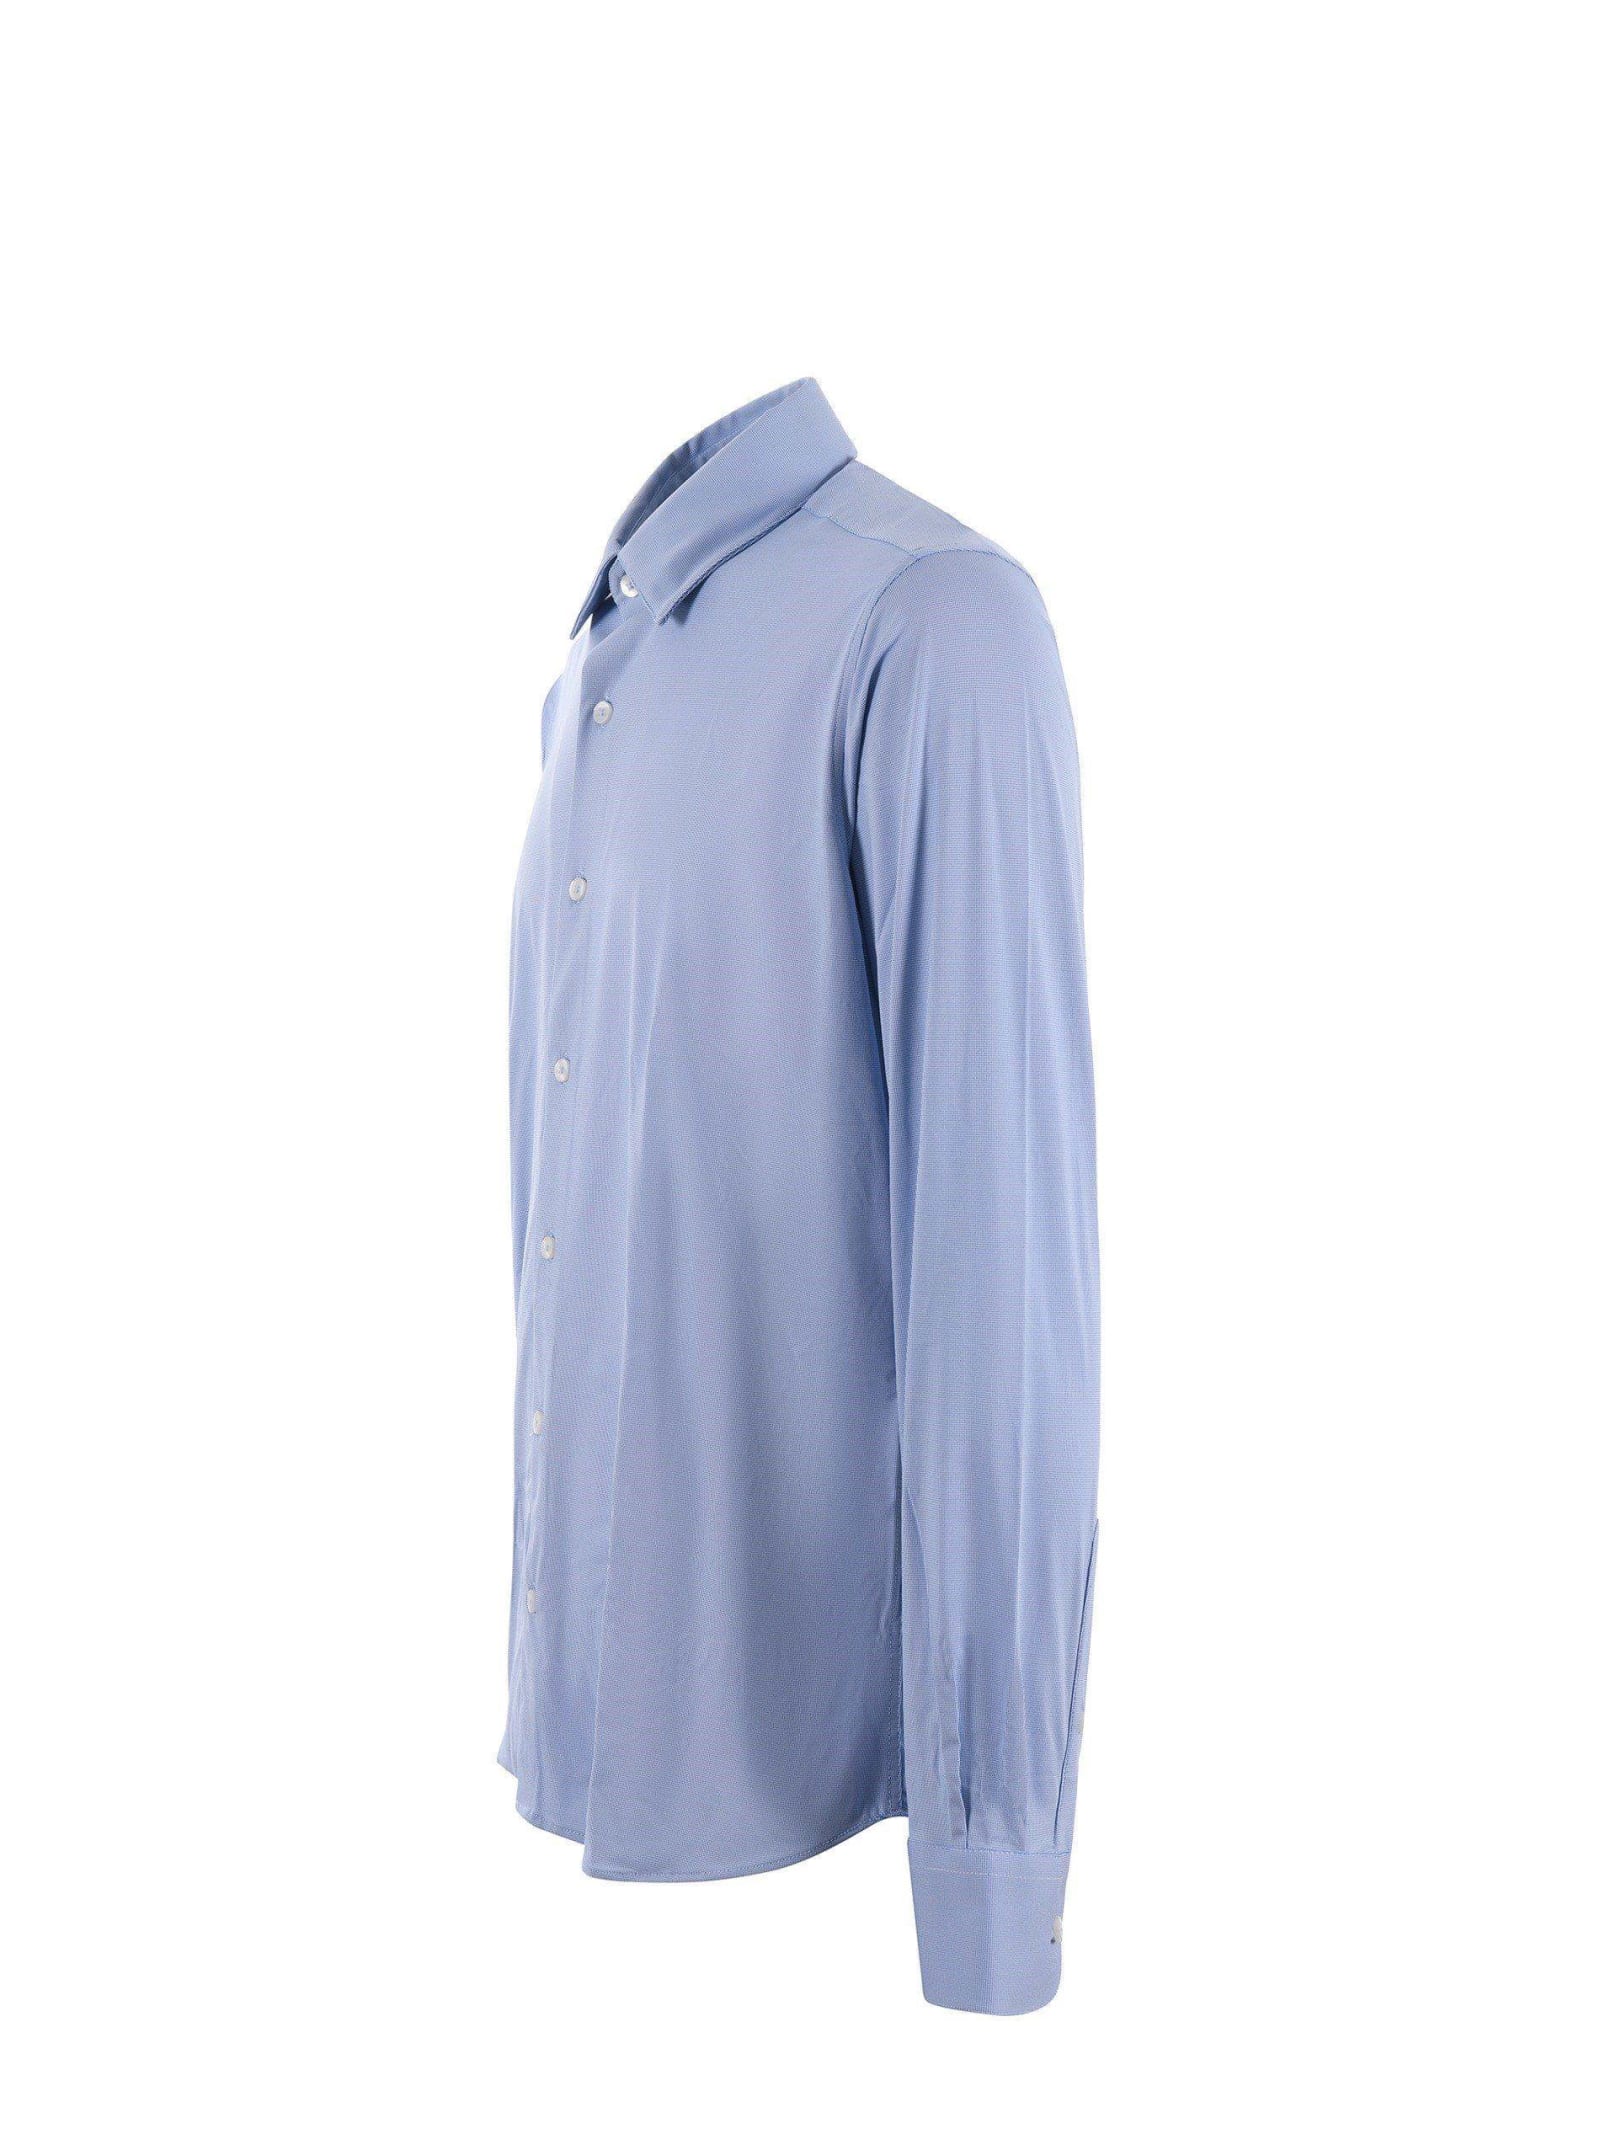 Shop Rrd - Roberto Ricci Design Camicia Rrd In Jersey Elasticizzato Disponibile Store Scafati In Bianco/blu